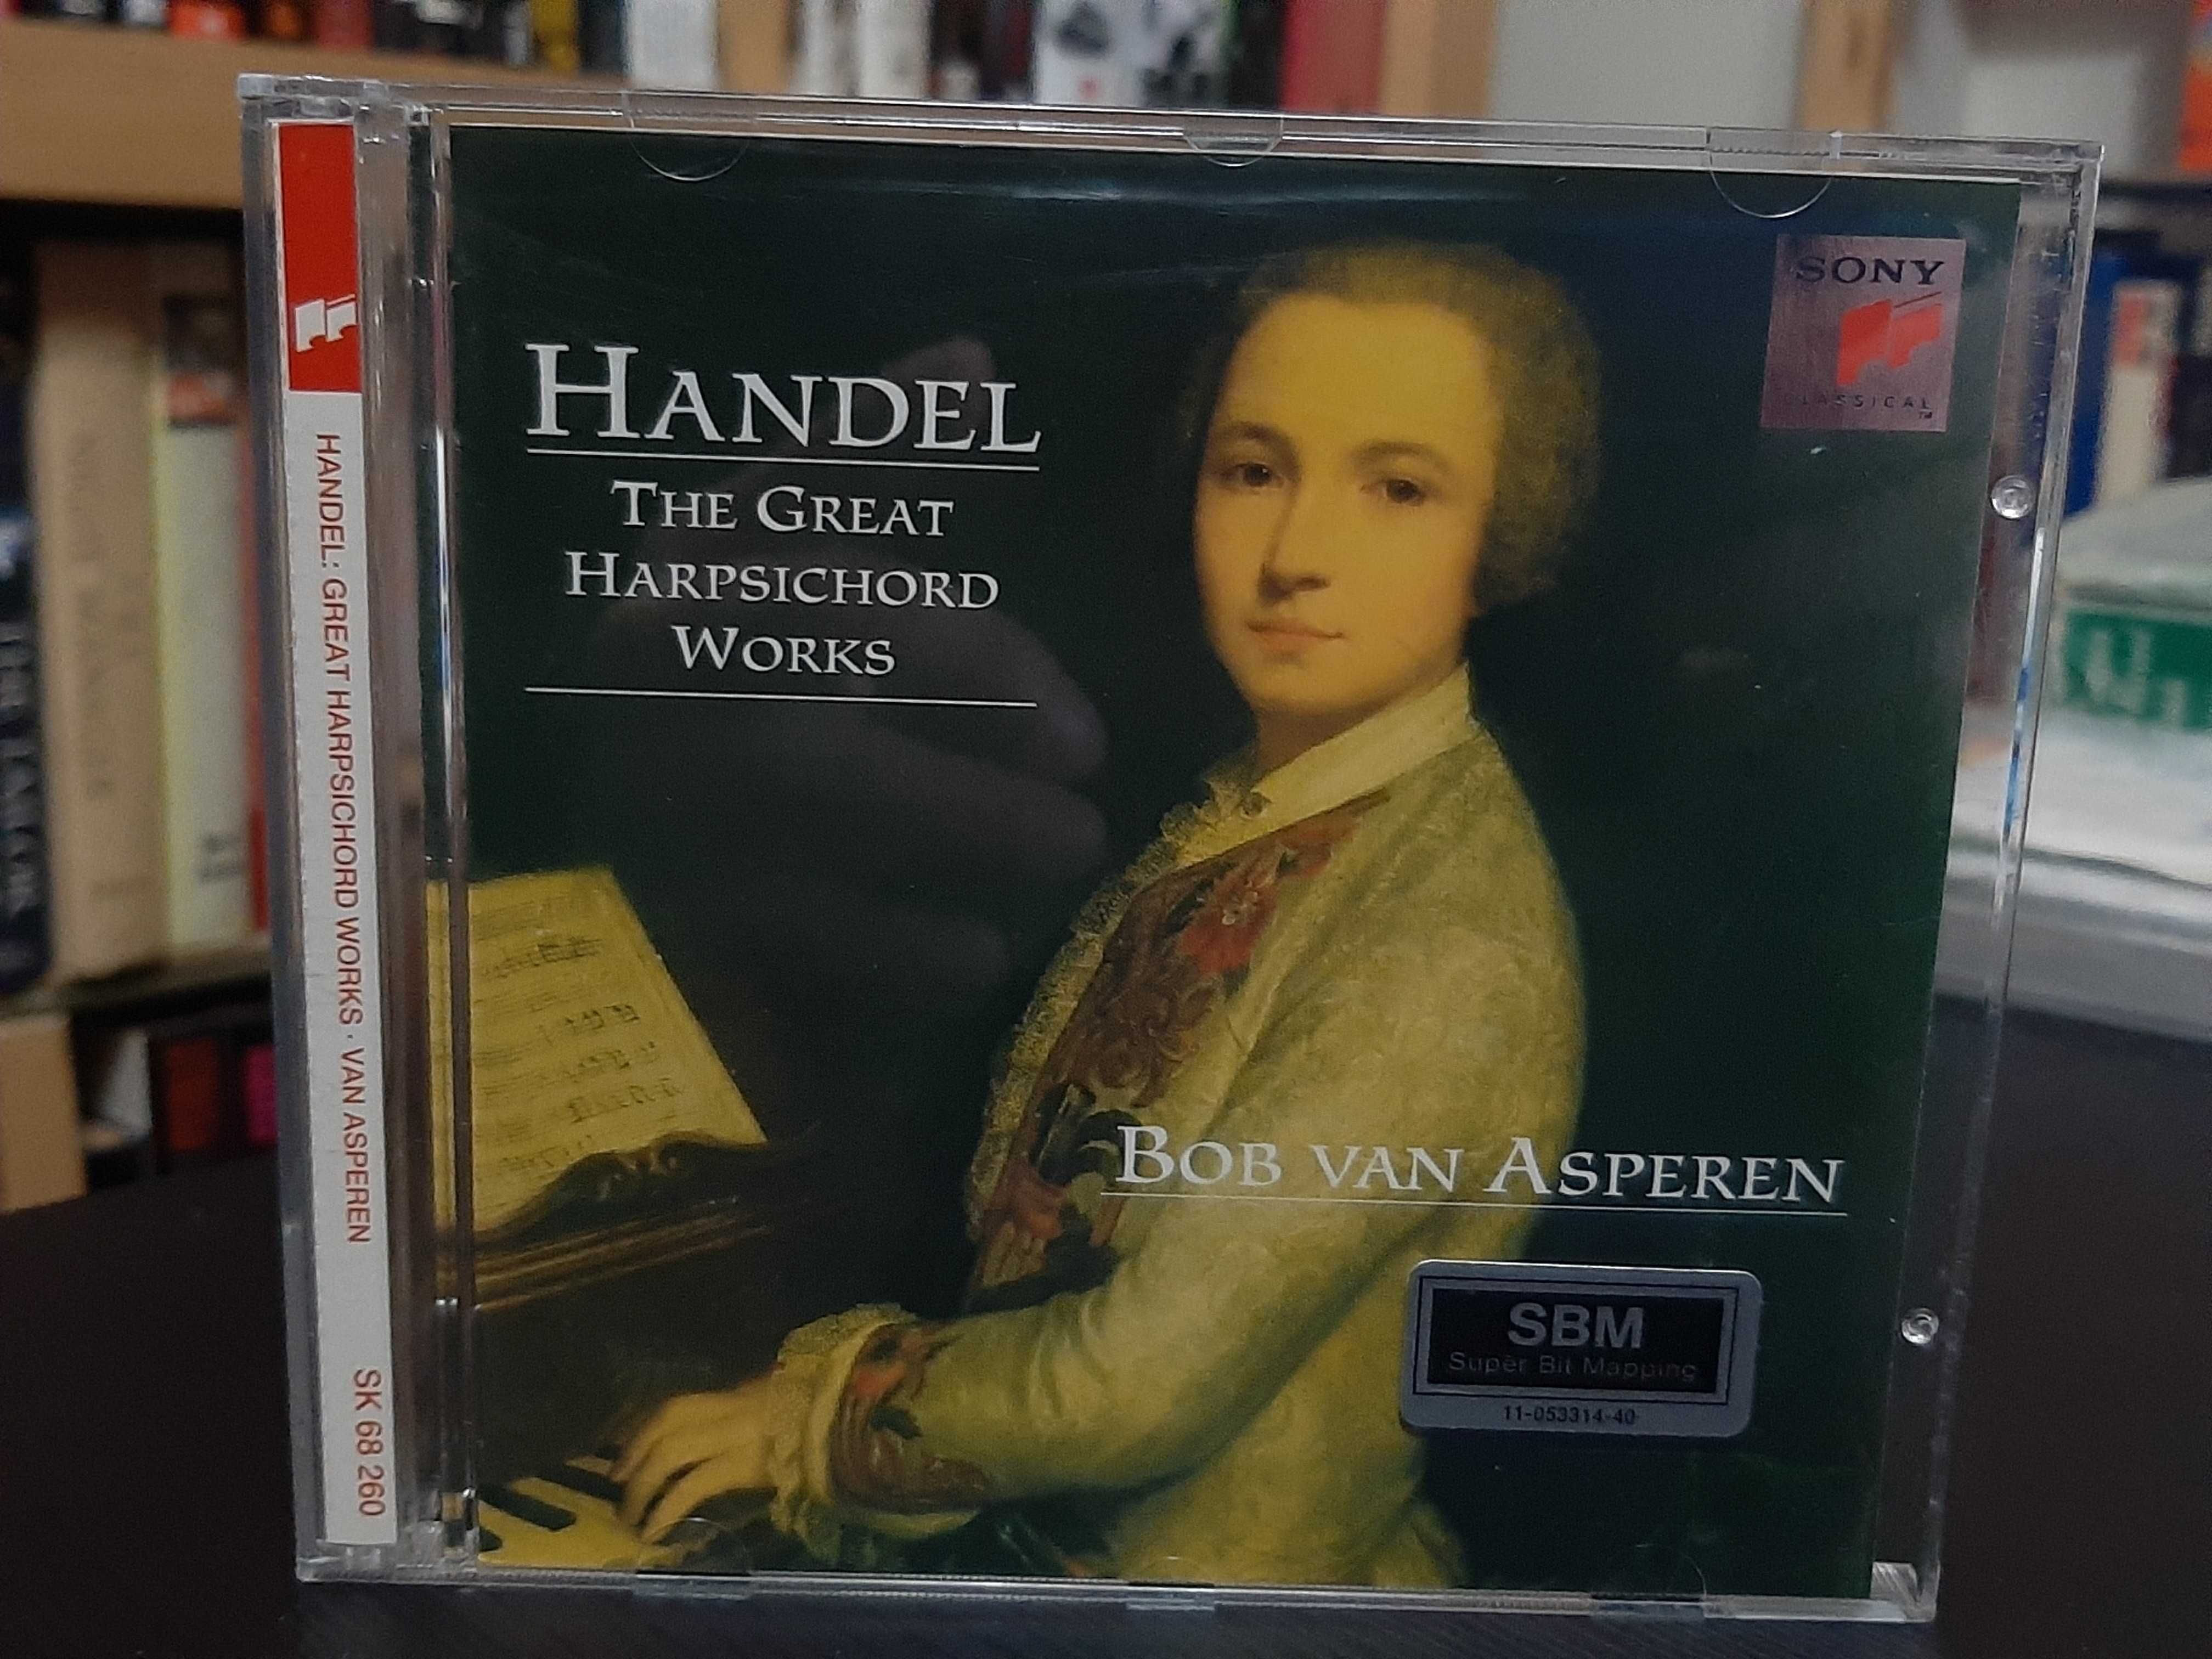 Handel – The Great Harpsichord Works – Bob van Asperen